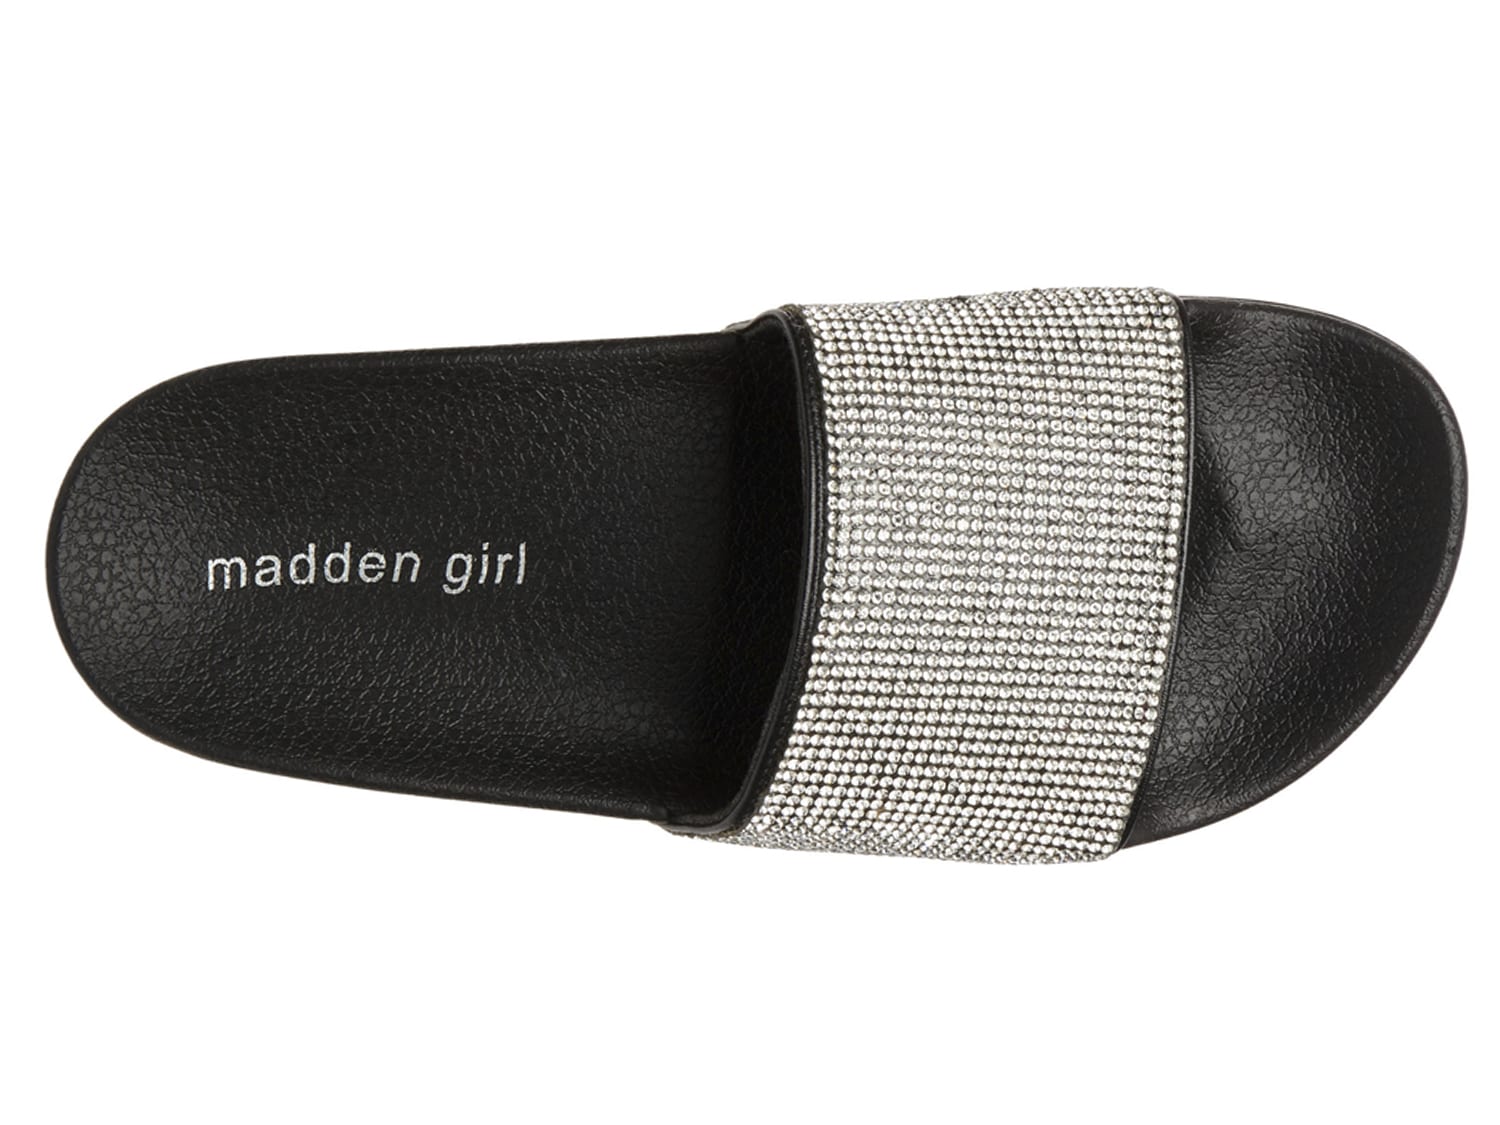 madden girl fancy slide sandal